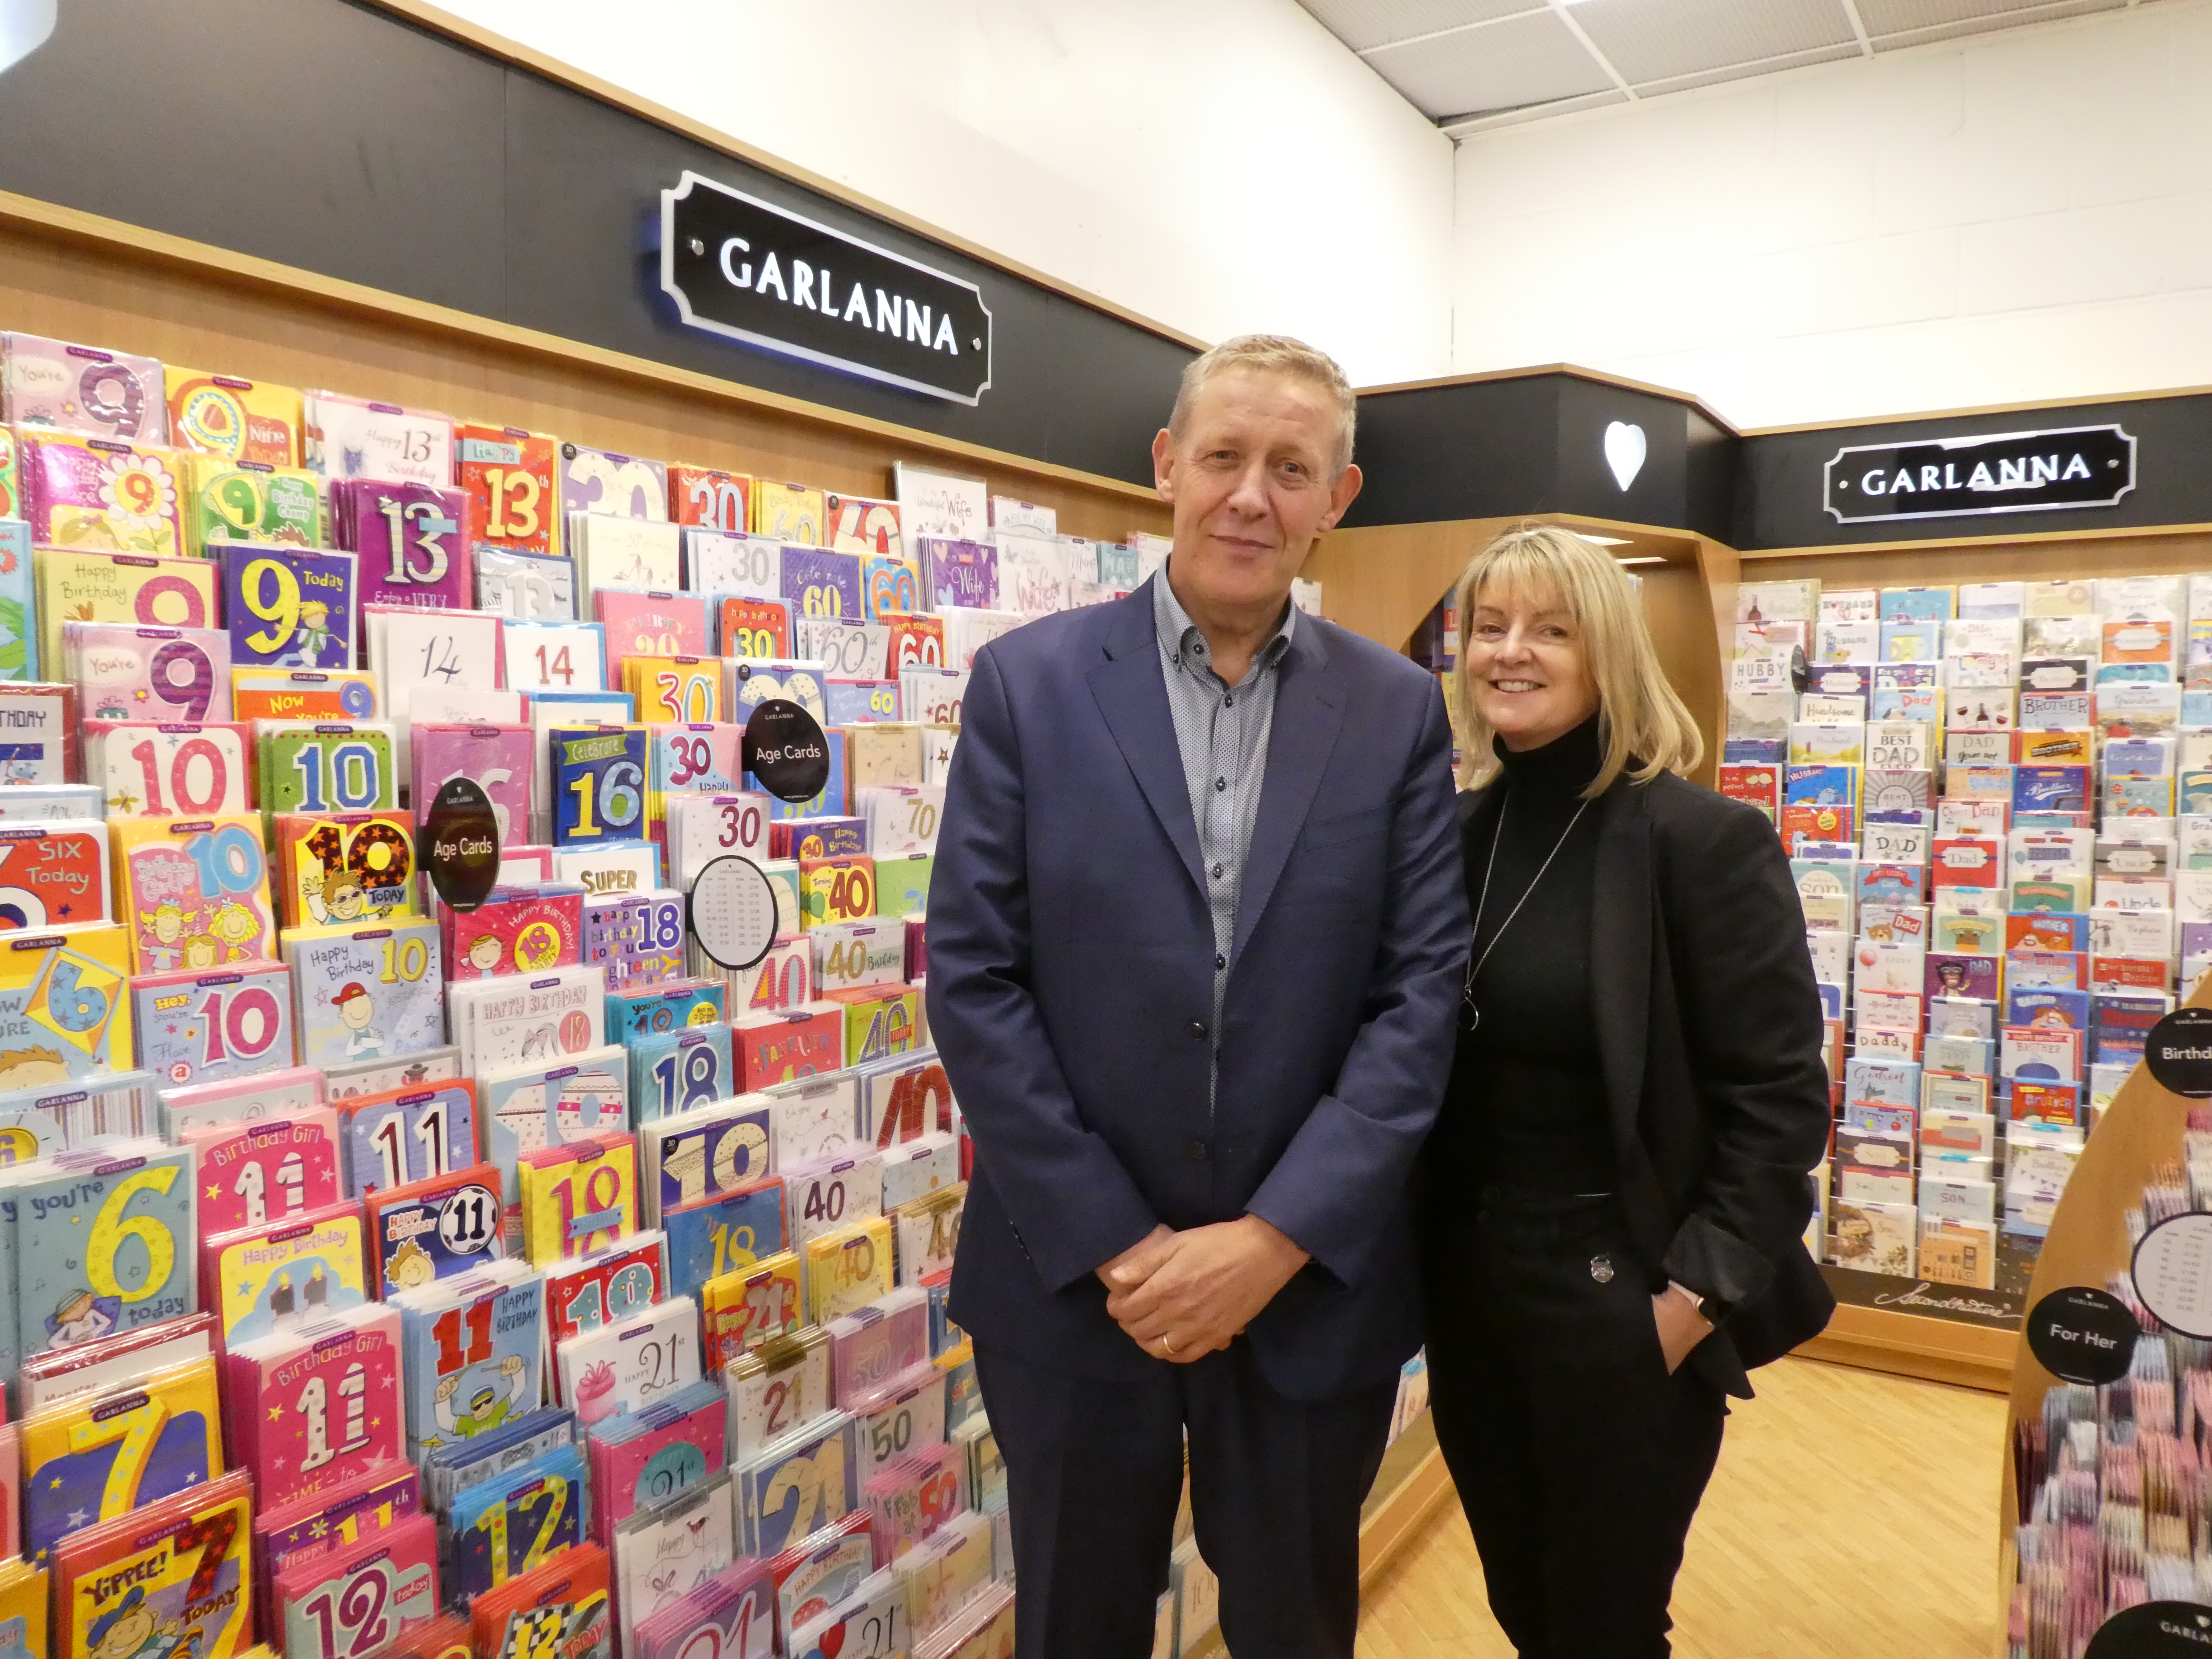 Above: Alan and Jackie MacNamee, co-owners of Garlanna in Leekes’ Melksham store.